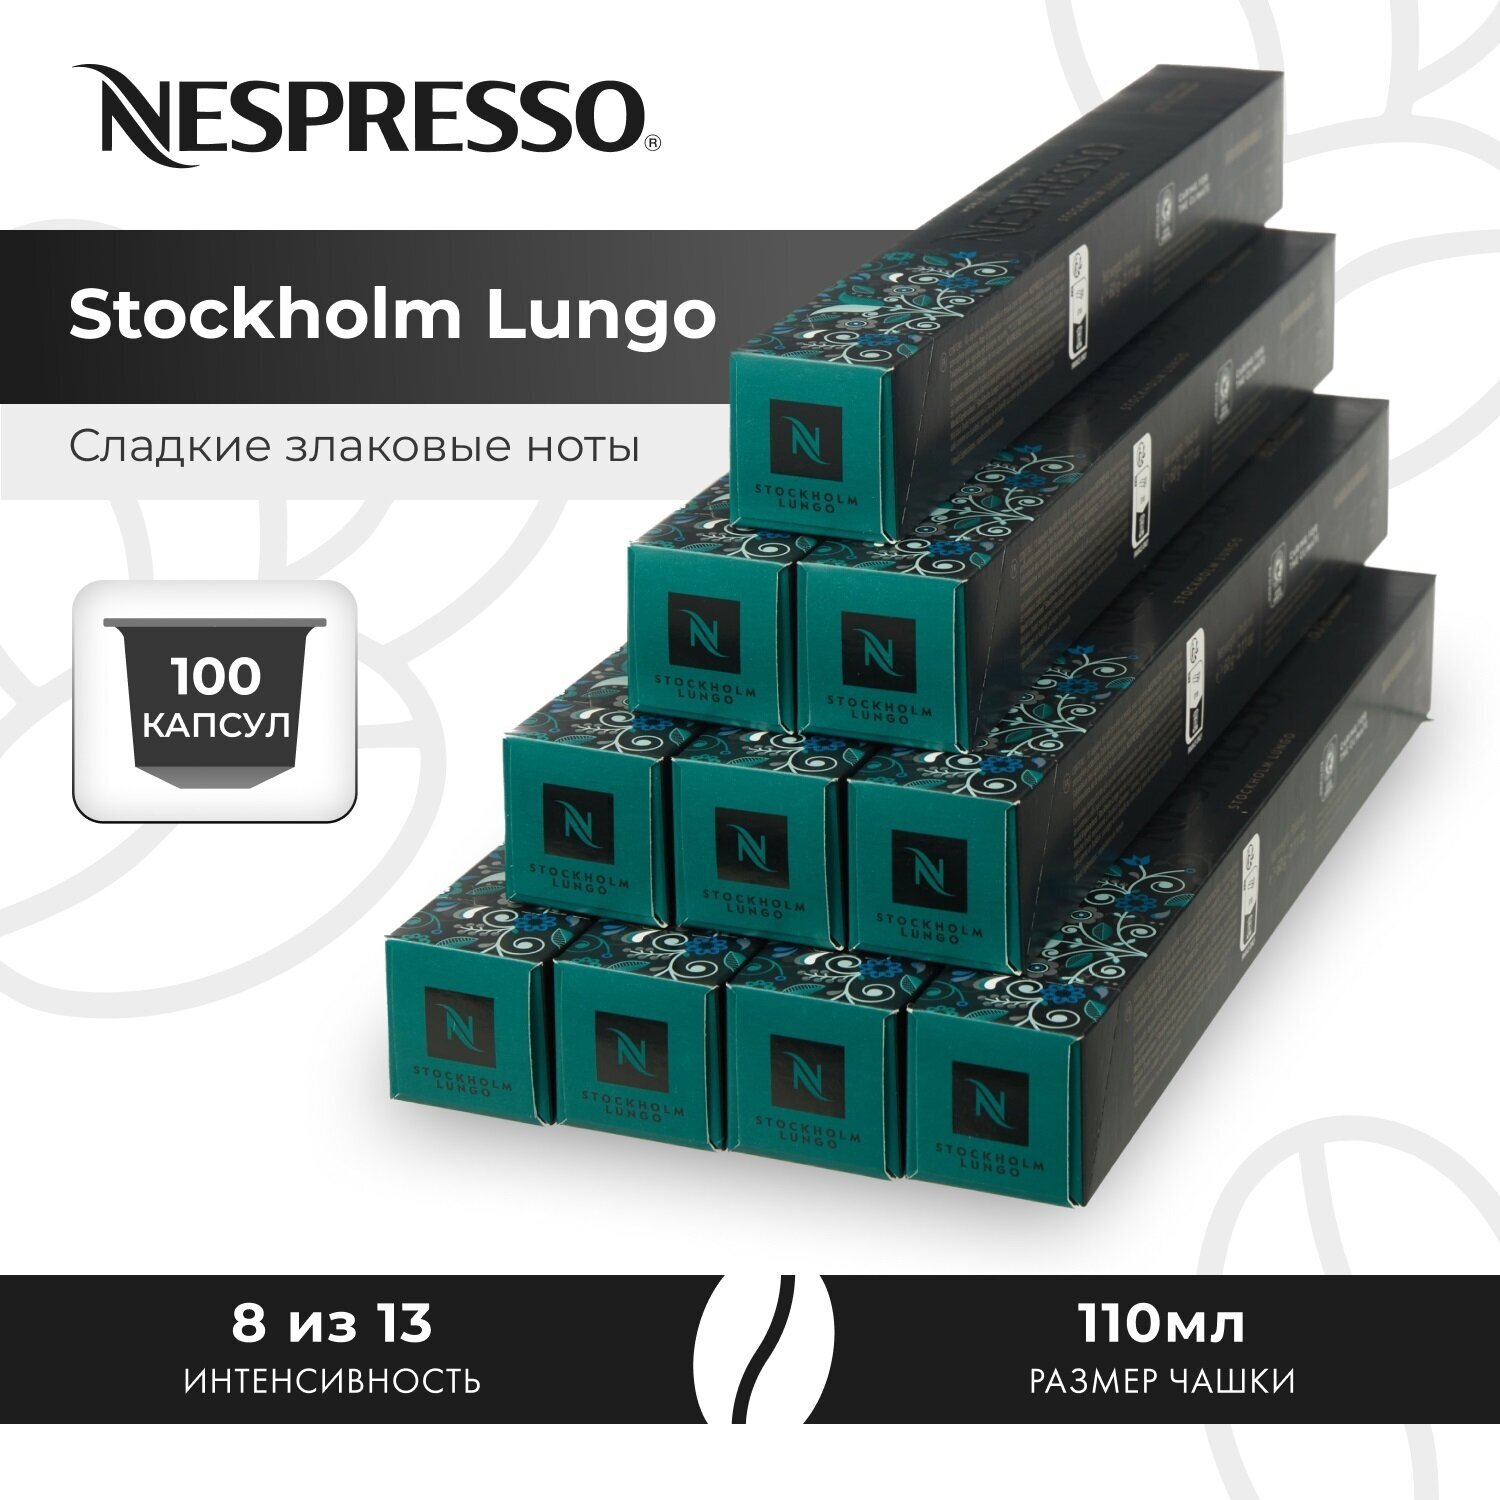 Кофе в капсулах Nespresso World Explorations Stockholm Fortissio Lungo, 10 кап. в уп., 10 уп. - фотография № 5